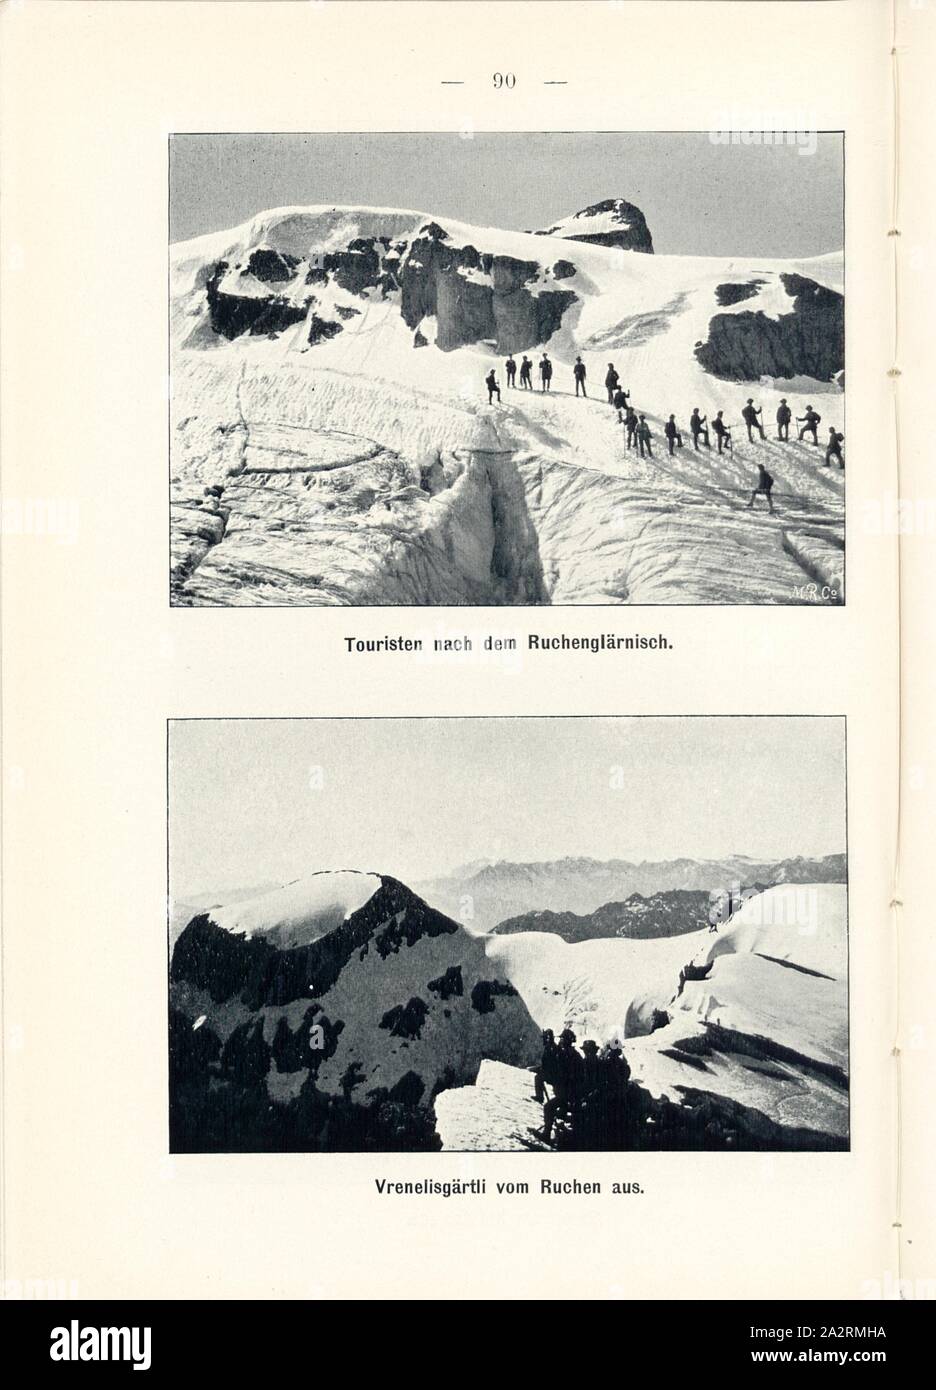 Tourists after smoking Glärnisch and Vrenelisgärtli from smoking, Alpinists in the Glarus Alps, Signed: M.R.C, Fig. 91 and 92, p. 83, Meisenbach, Riffarth und Co. (imp.), 1900, J. Knobel: Illustrierter Reisebegleiter für die Alpenstrasse des Klausen und ihre Zufahrtslinien. Glarus: Buchdruckerei J. Spälti, 1900 Stock Photo